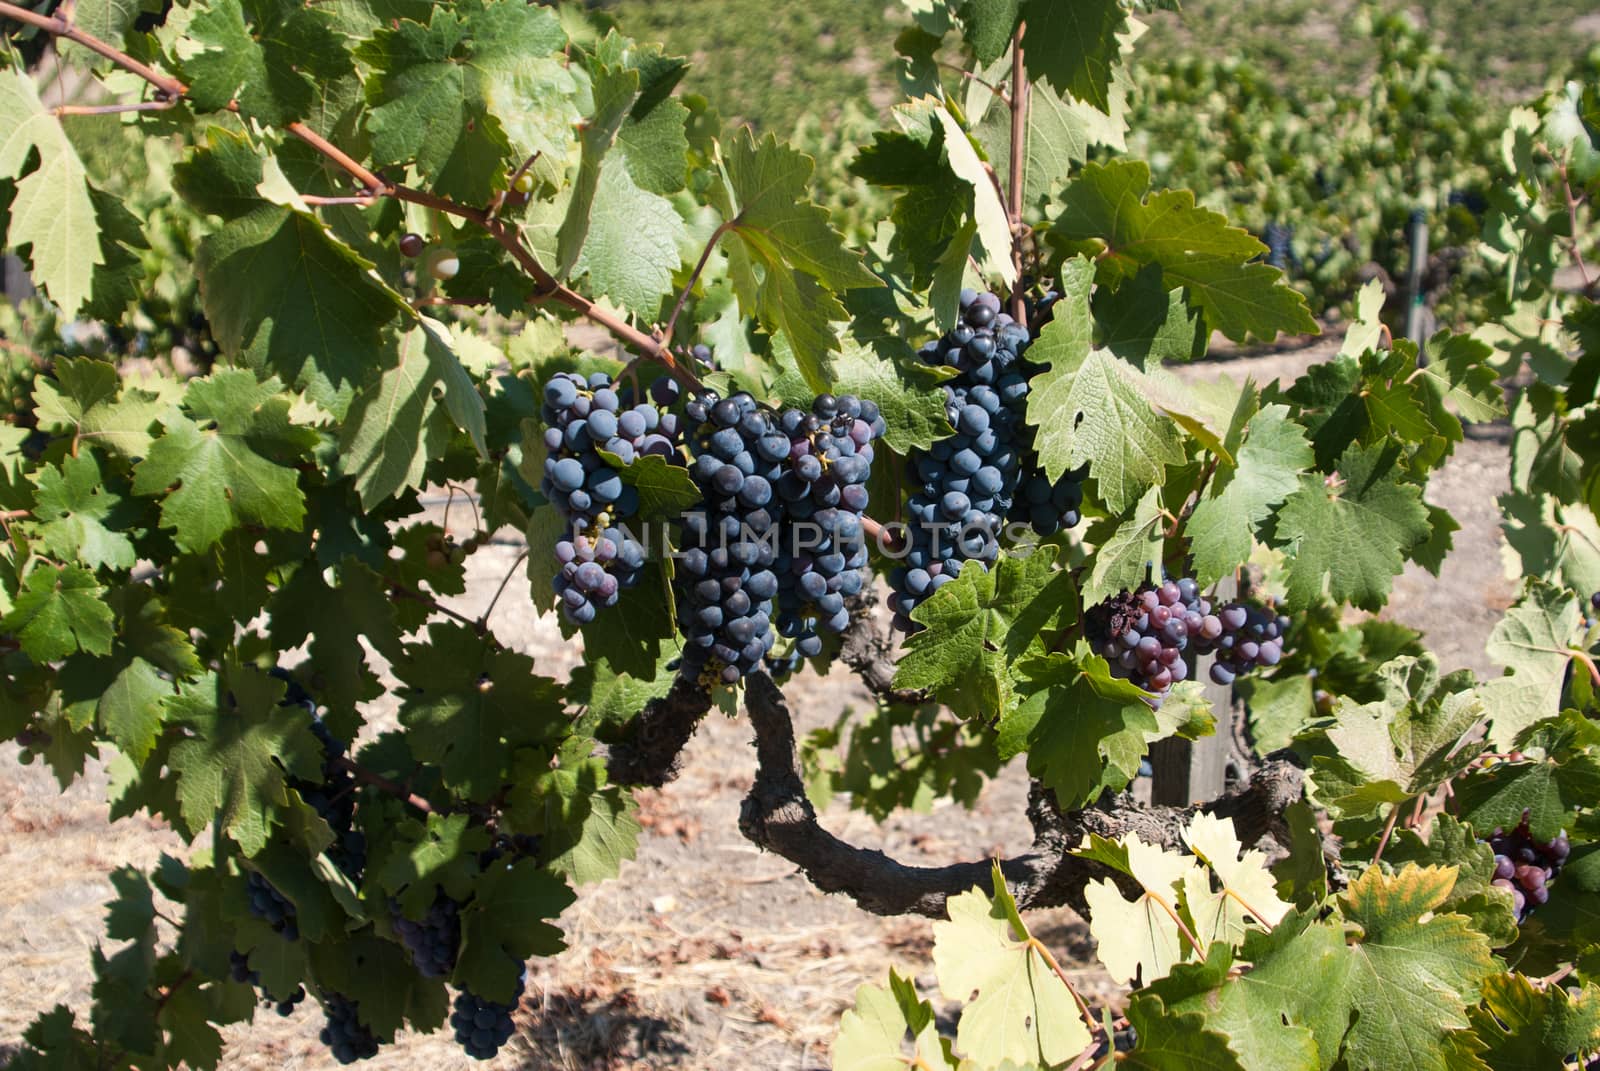 Ripe black California grapes by emattil